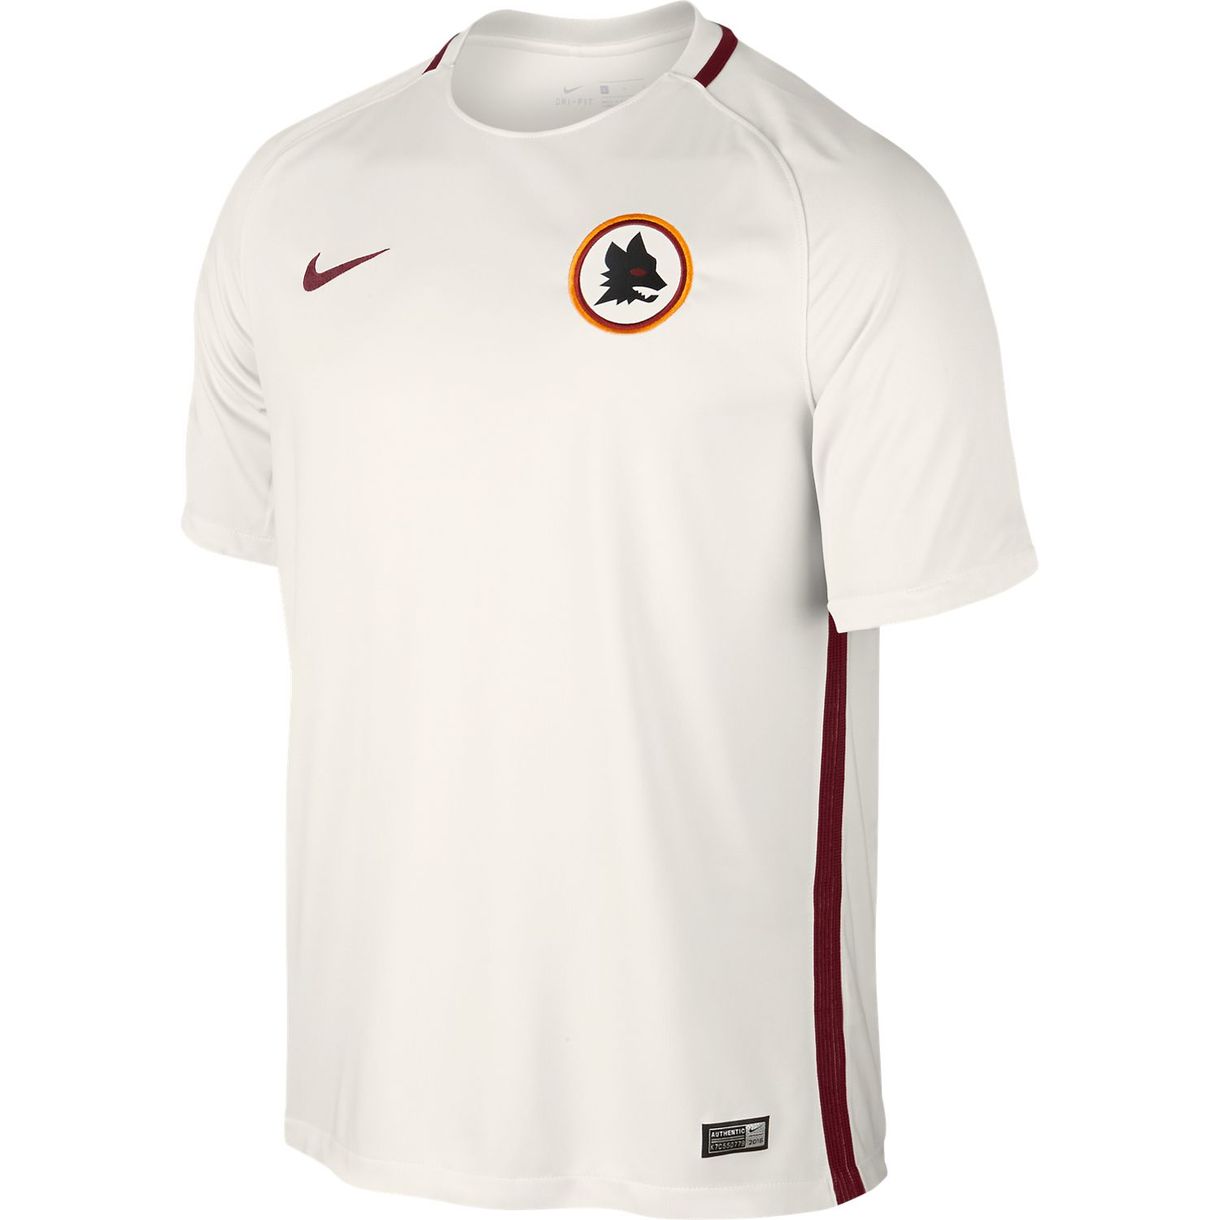 Roma Away Shirt Cheap Online [ 1220 x 1220 Pixel ]